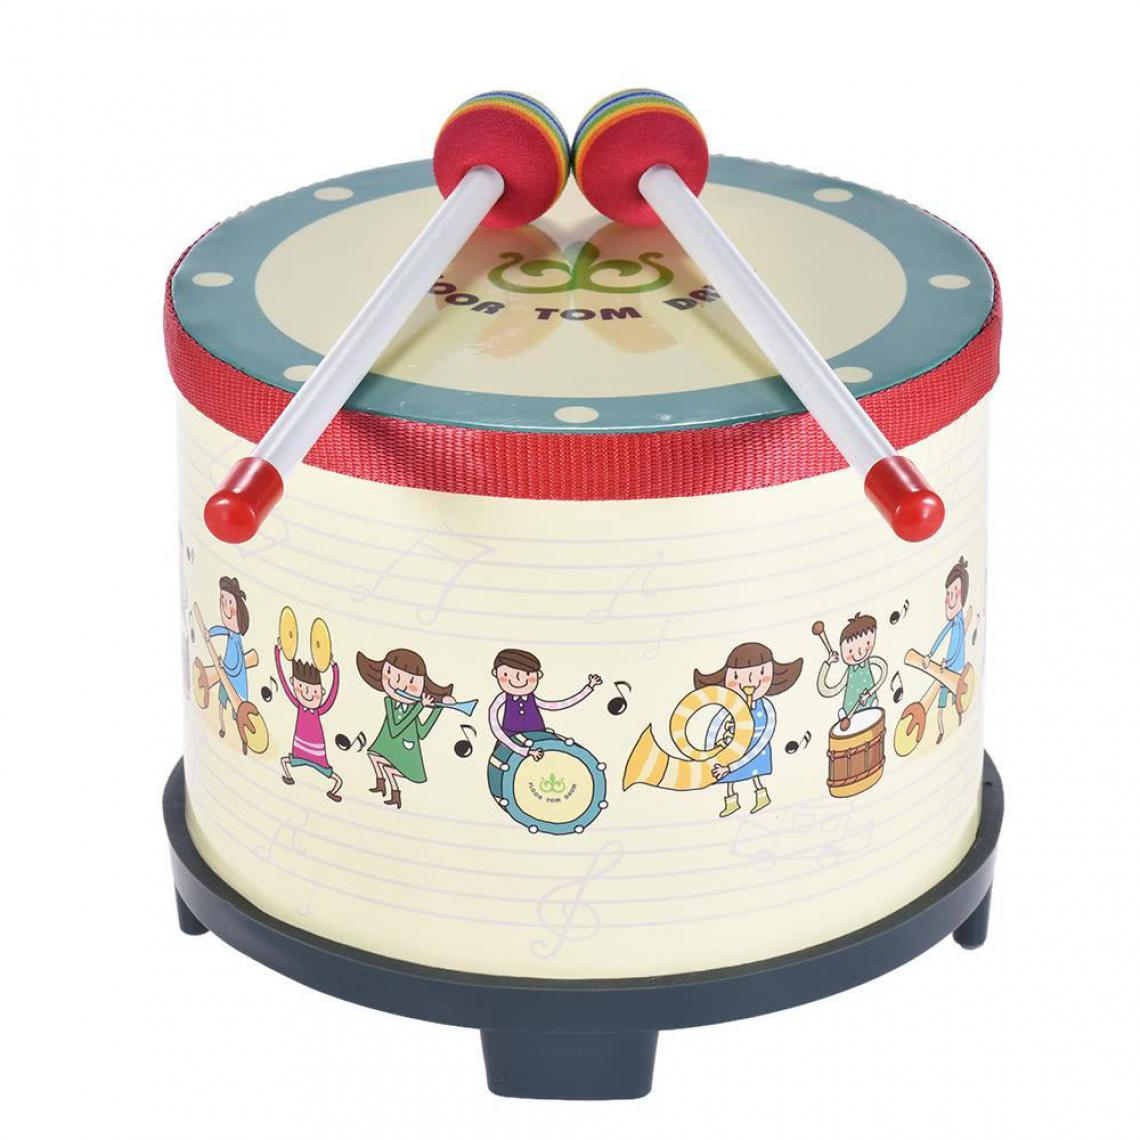 Justgreenbox - Instrument de percussion de carnaval de club de rassemblement de tambour de plancher en bois de 8 pouces avec 2 maillets pour des enfants d'enfants - 32821299541 - Tambours